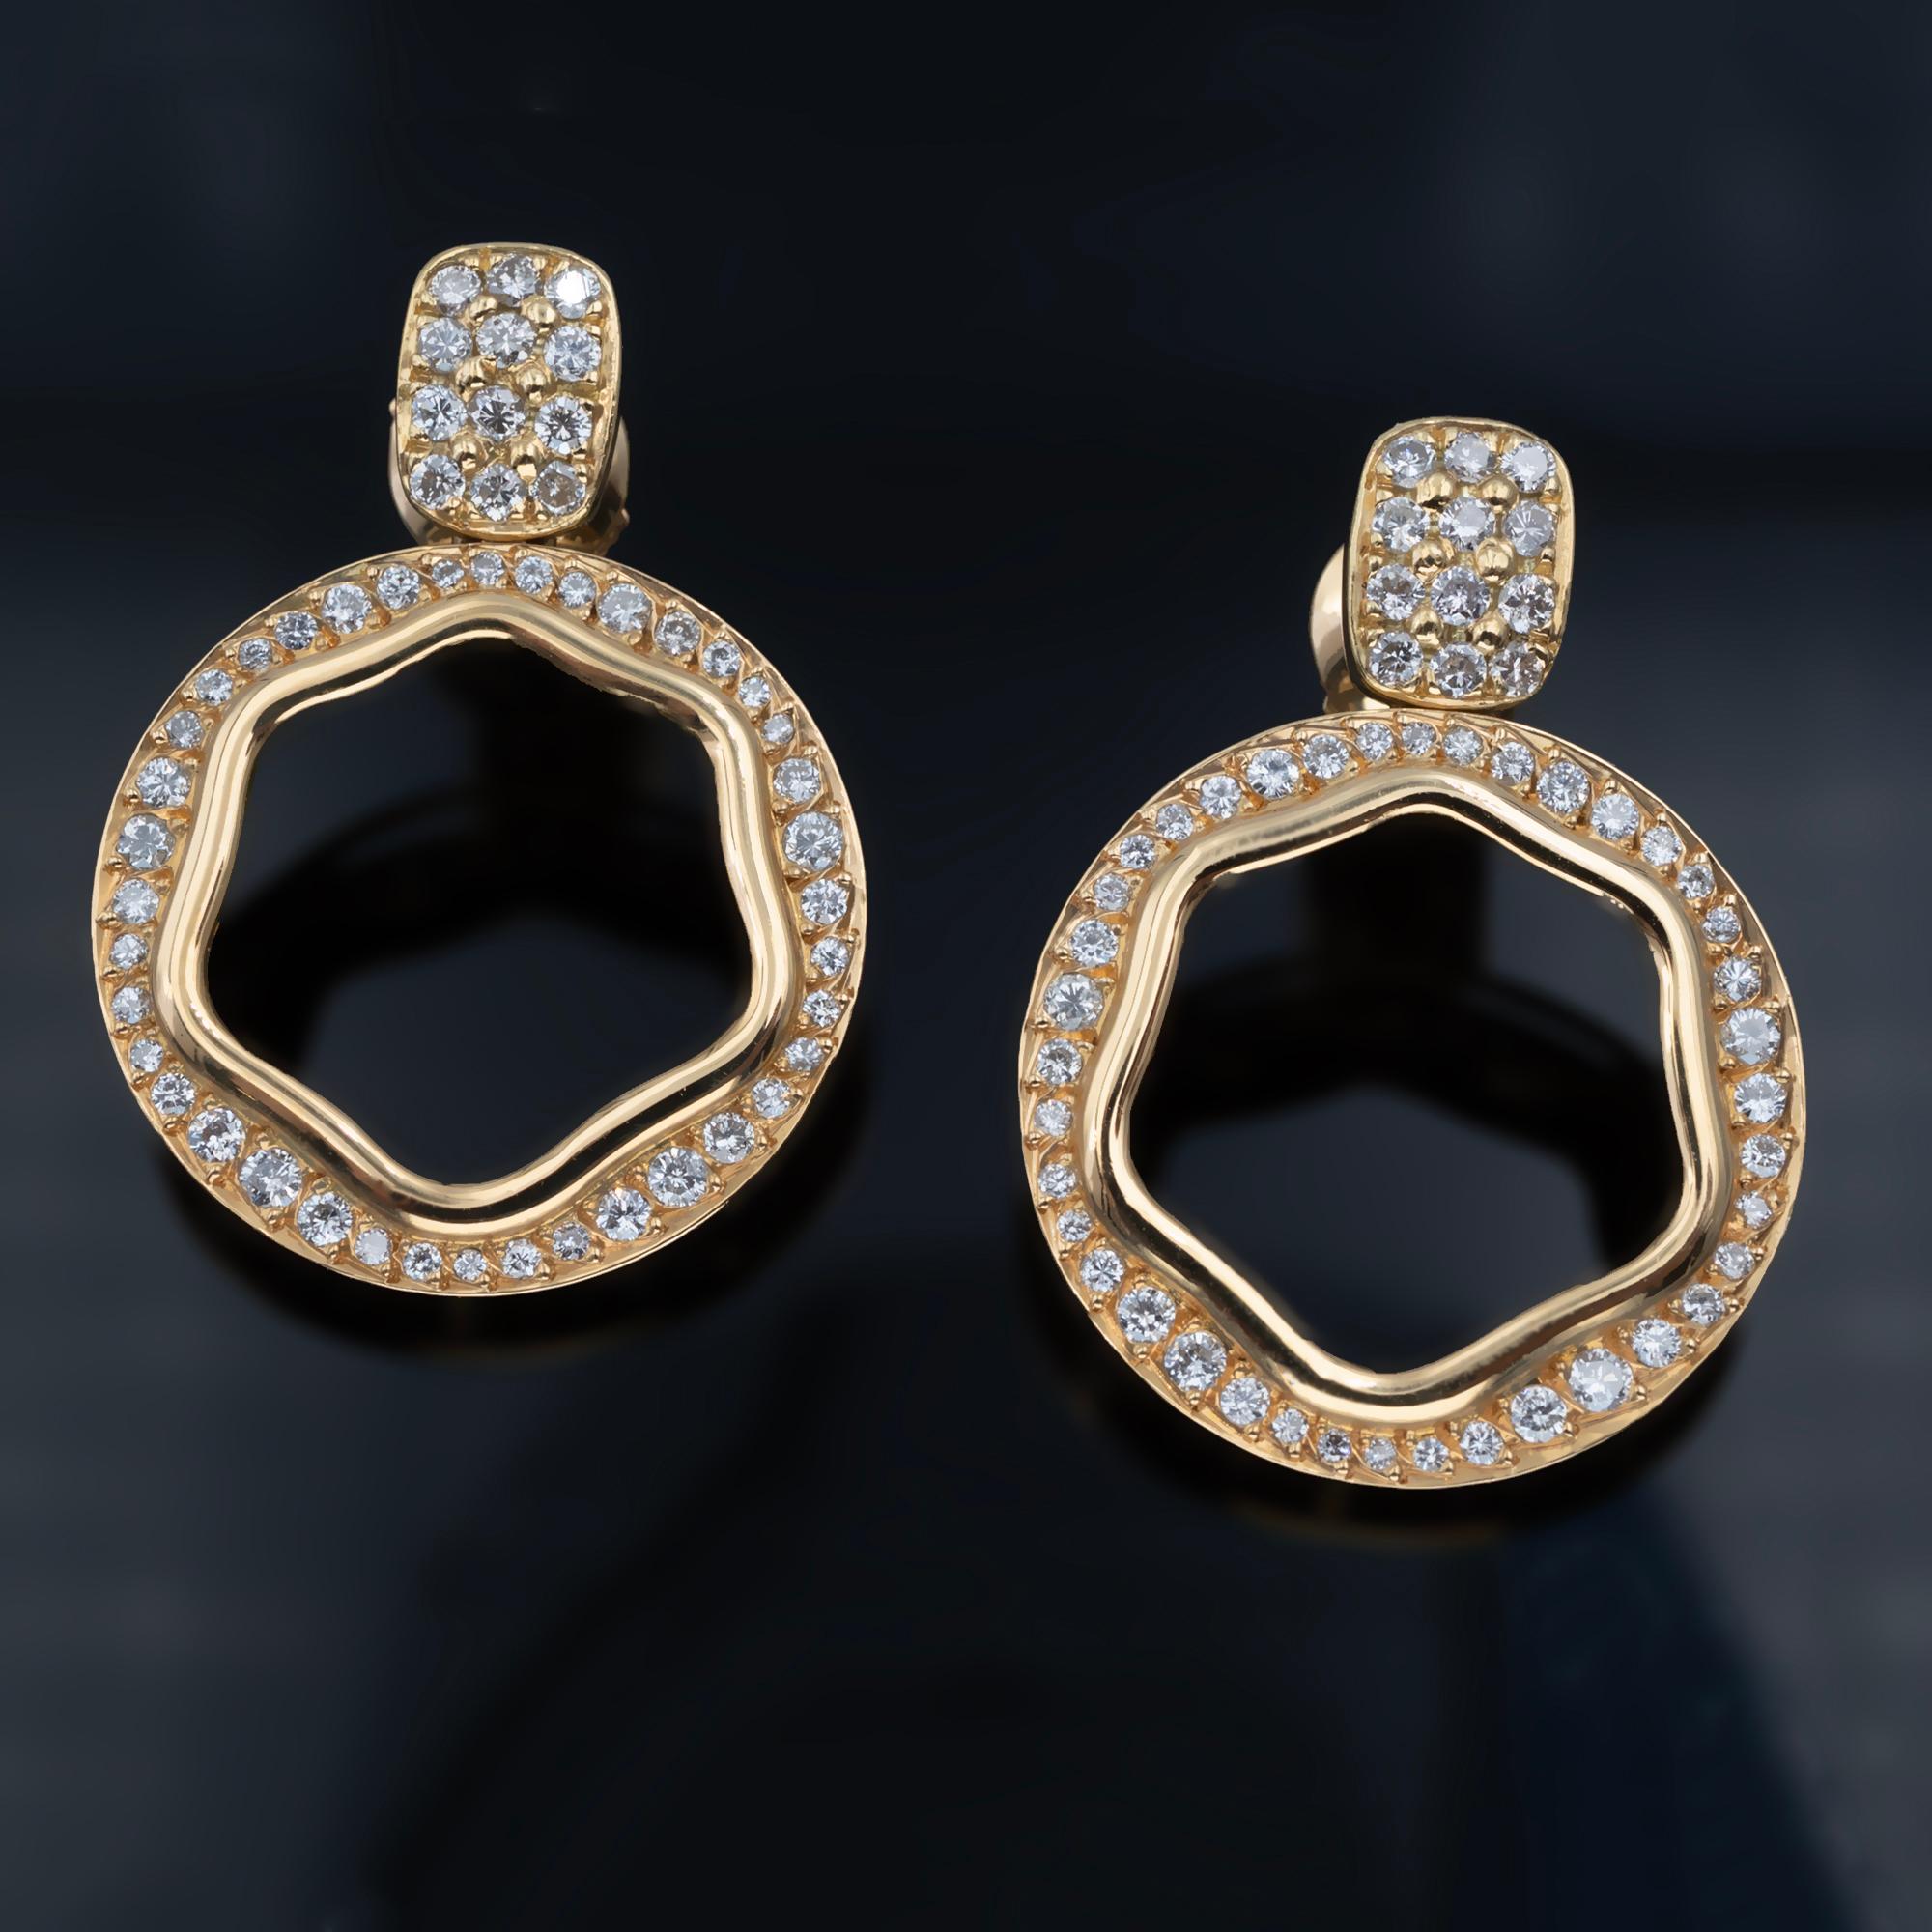 Unsere schicken Ohrringe aus 18 Karat Gold und Diamanten sind die perfekte Mischung aus Stil und Raffinesse. 
Diese Ohrringe haben eine kreisförmige Form, die zart an einem pavégefassten Ohrstecker baumelt und so ein trendiges und auffälliges Design